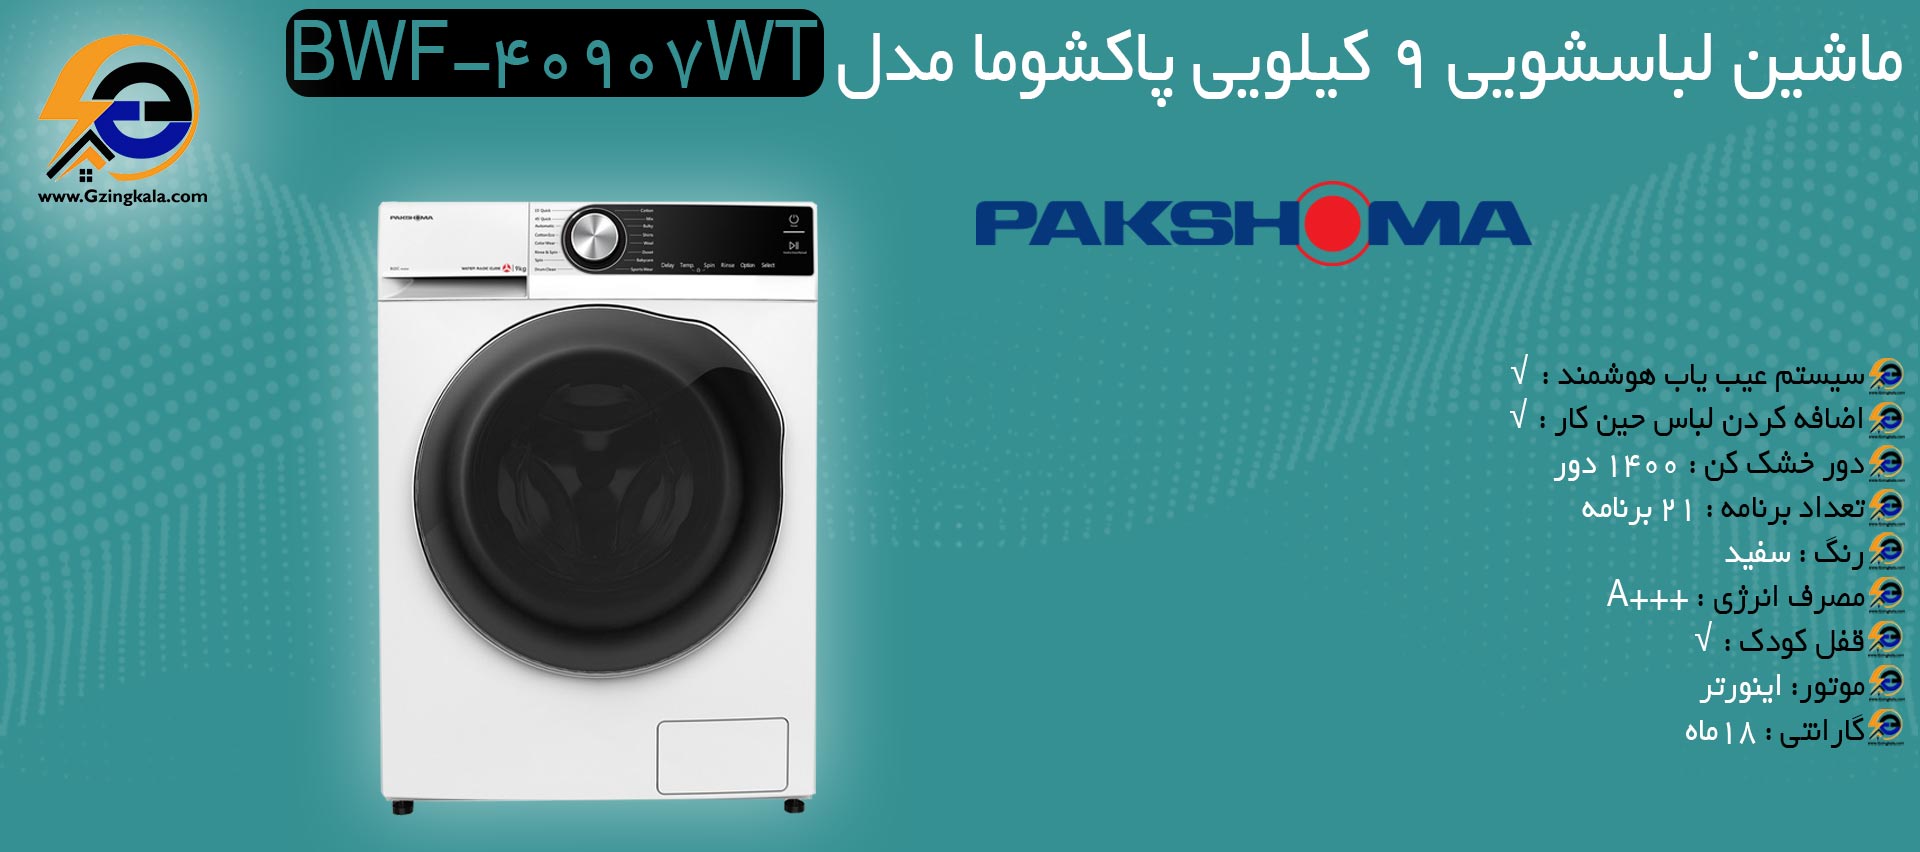 ماشین لباسشویی 9 کیلویی پاکشوما مدل BWF-40907WT